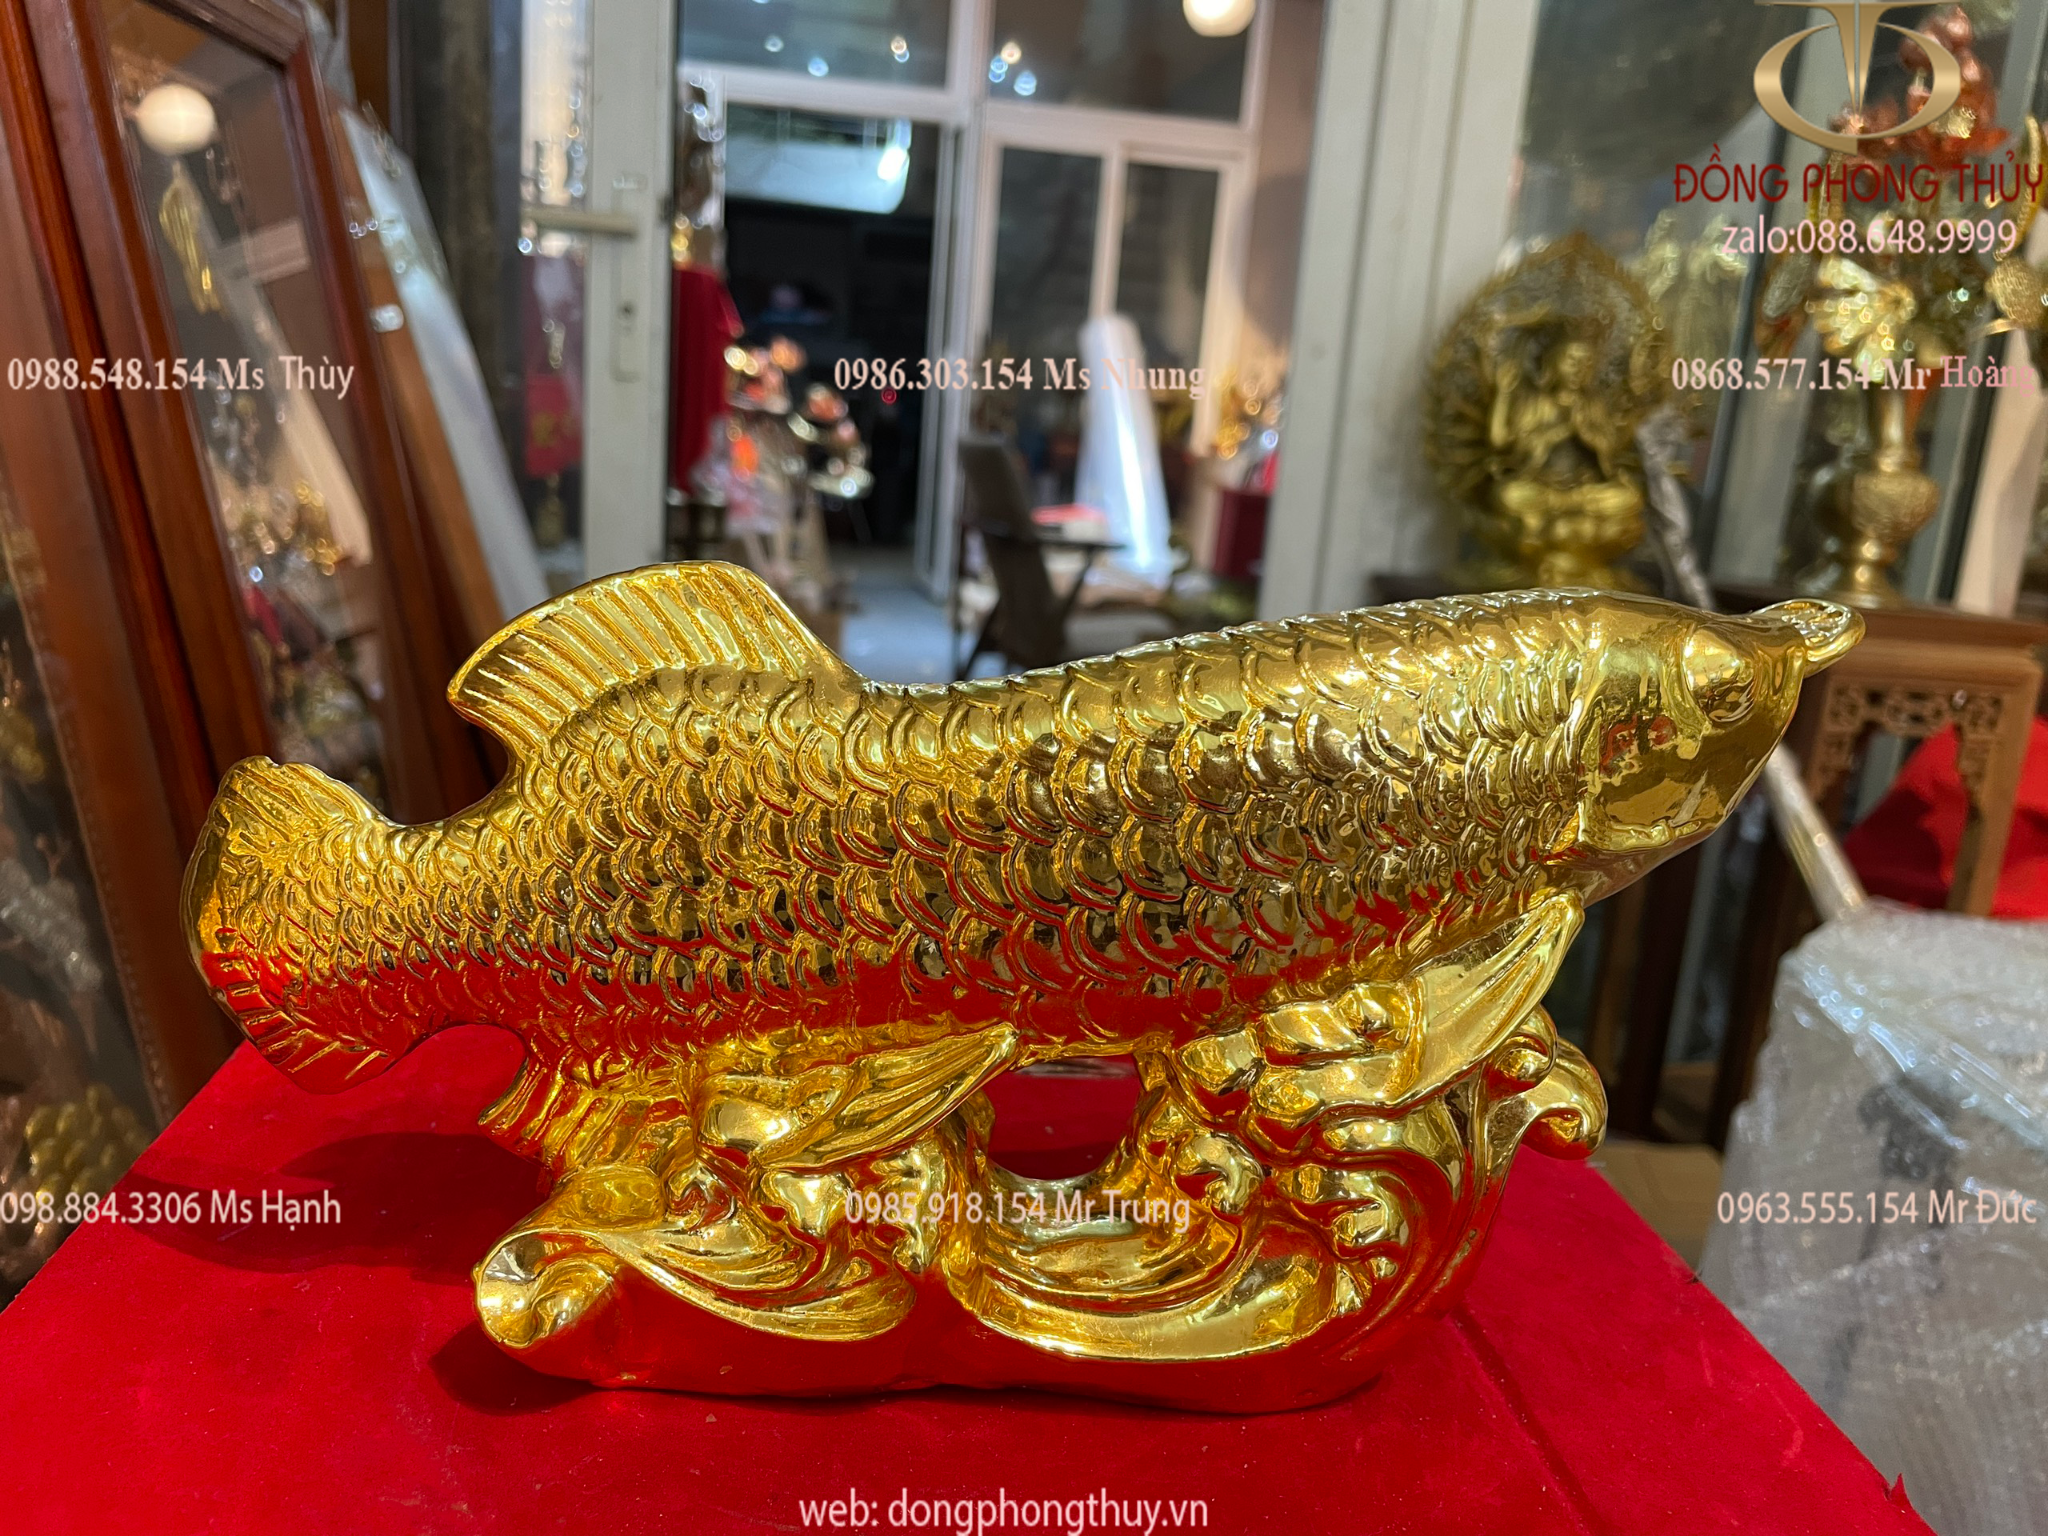 Quà tặng sếp: Tượng cá rồng bằng đồng dát vàng 24k